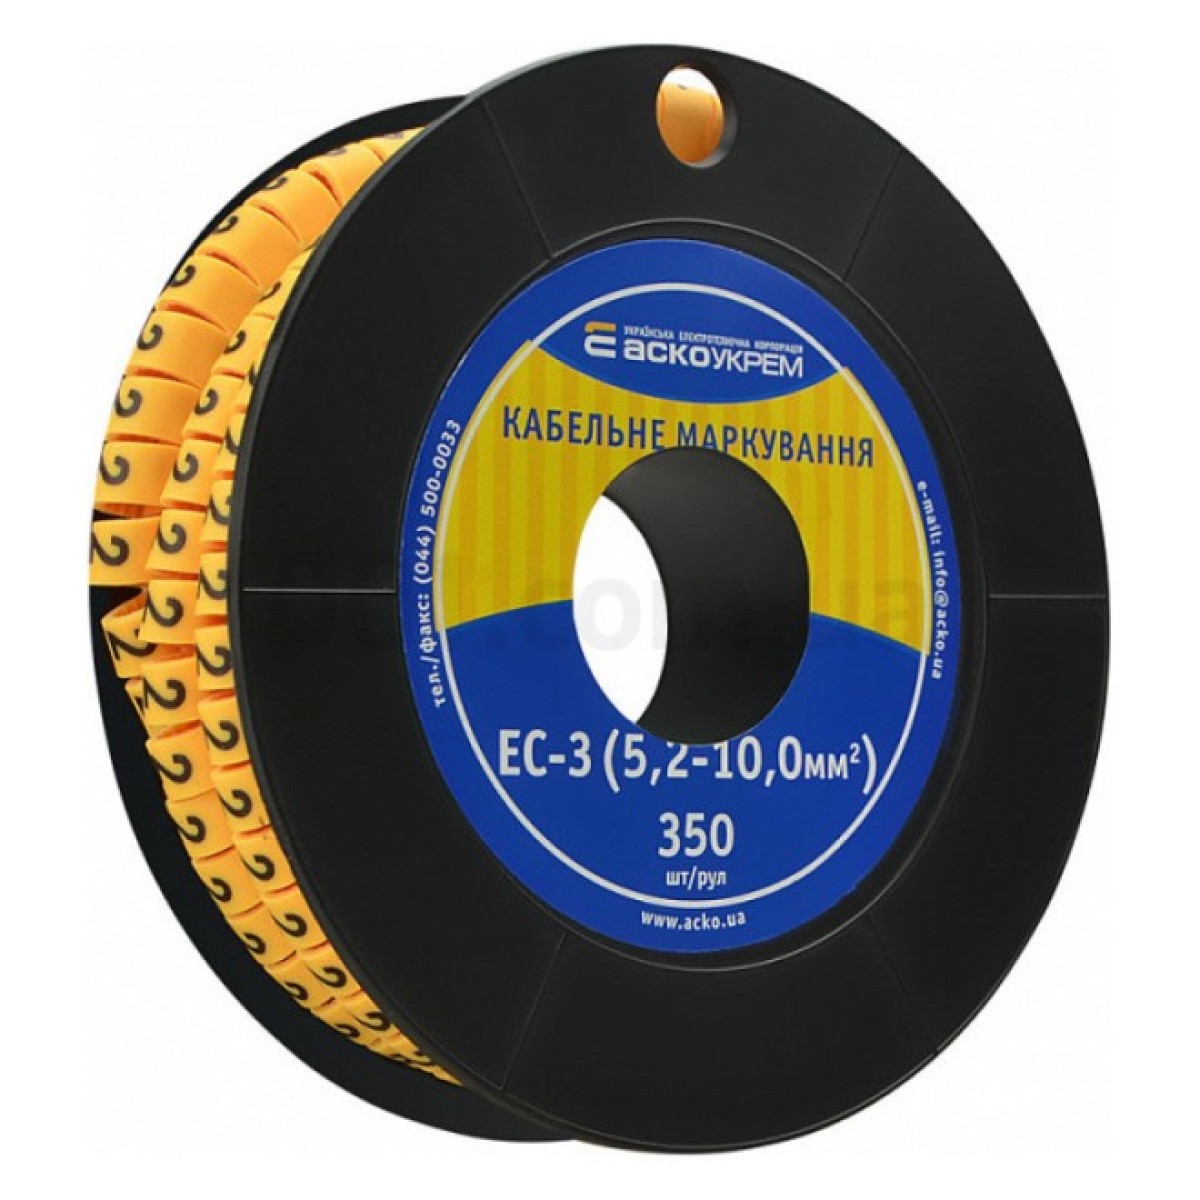 Маркировка EC-3 для кабеля 5,2-10,0 мм² символ «2» (рулон 250 шт.), АСКО-УКРЕМ 256_256.jpg